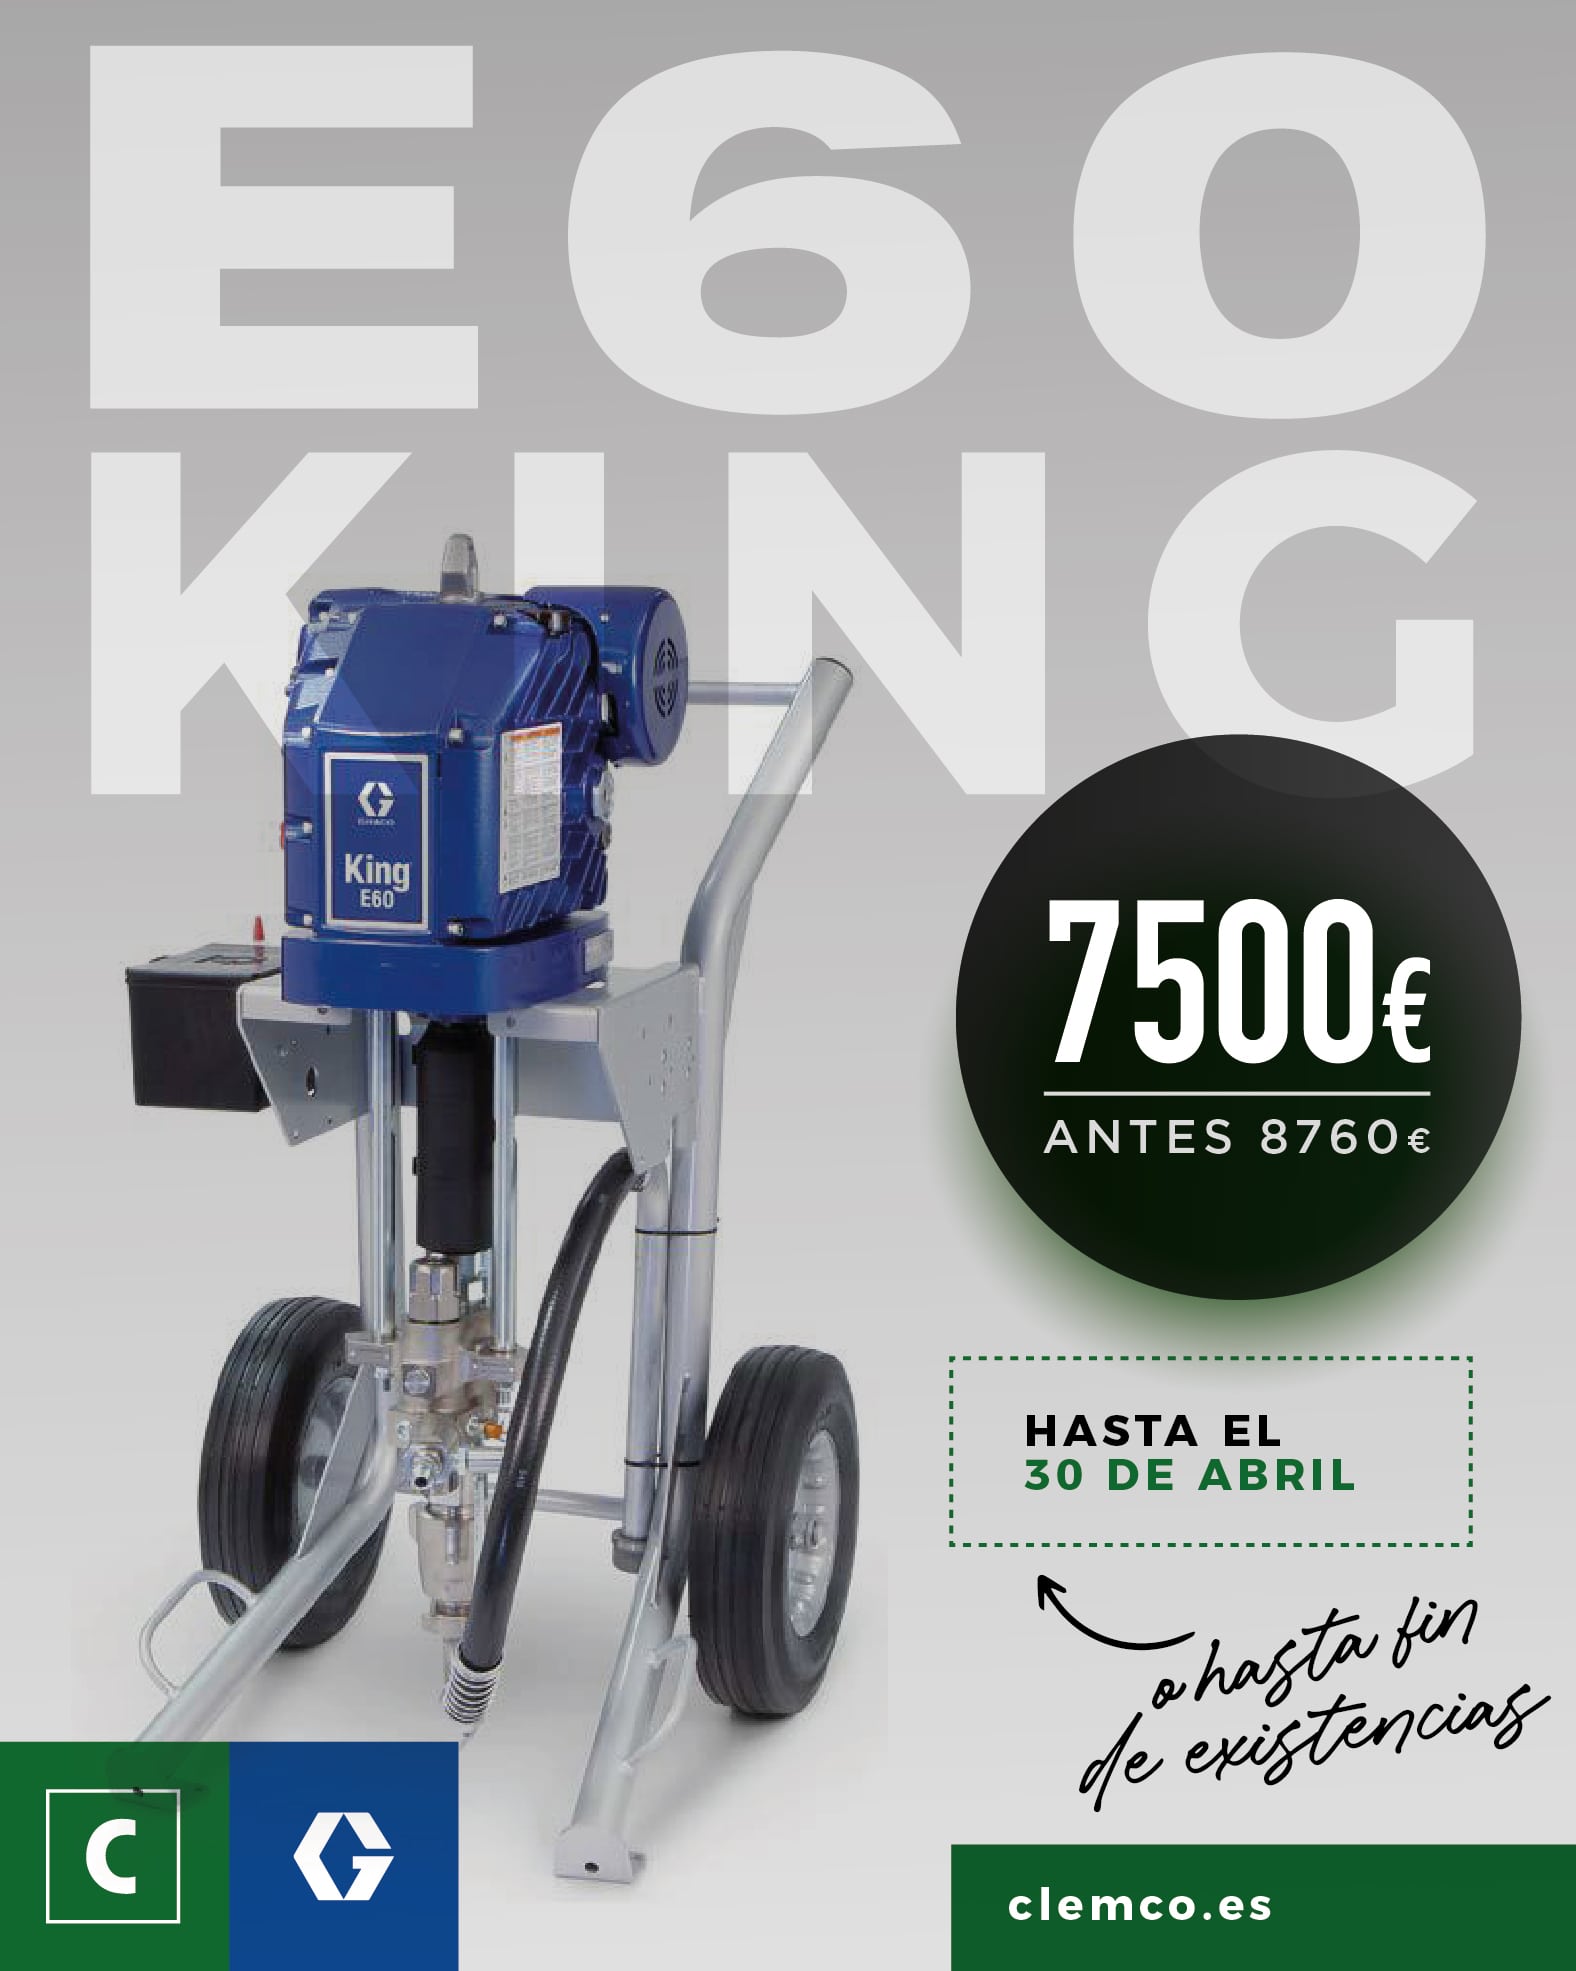 E60 King en oferta